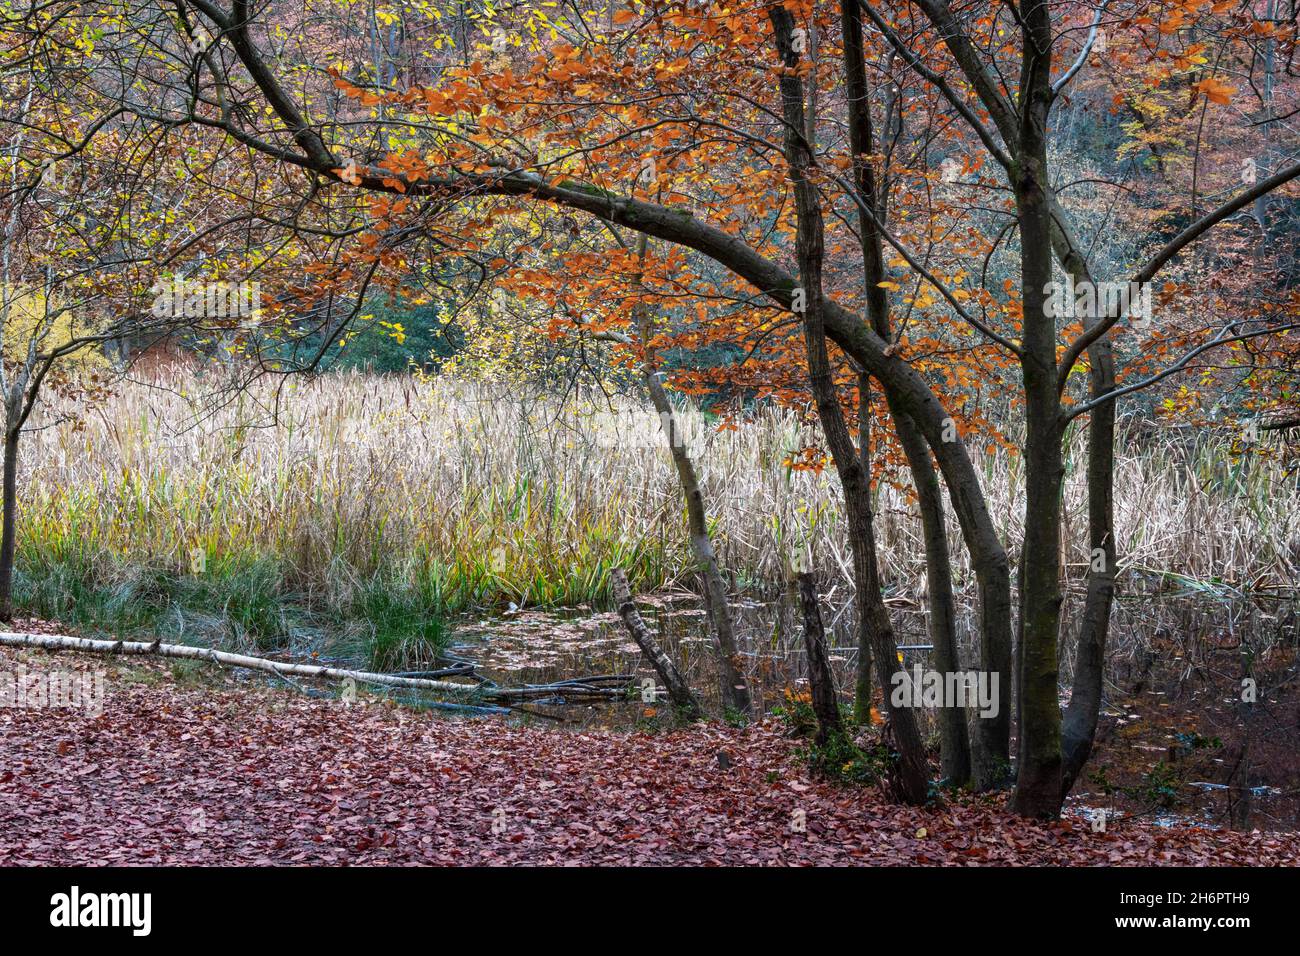 Bosque con cañas en el fondo. Los árboles jóvenes que crecen en las orillas de un estanque que está sobrecrecido con cañas, bosques de Burnham, Buckinghamshire, Reino Unido Foto de stock